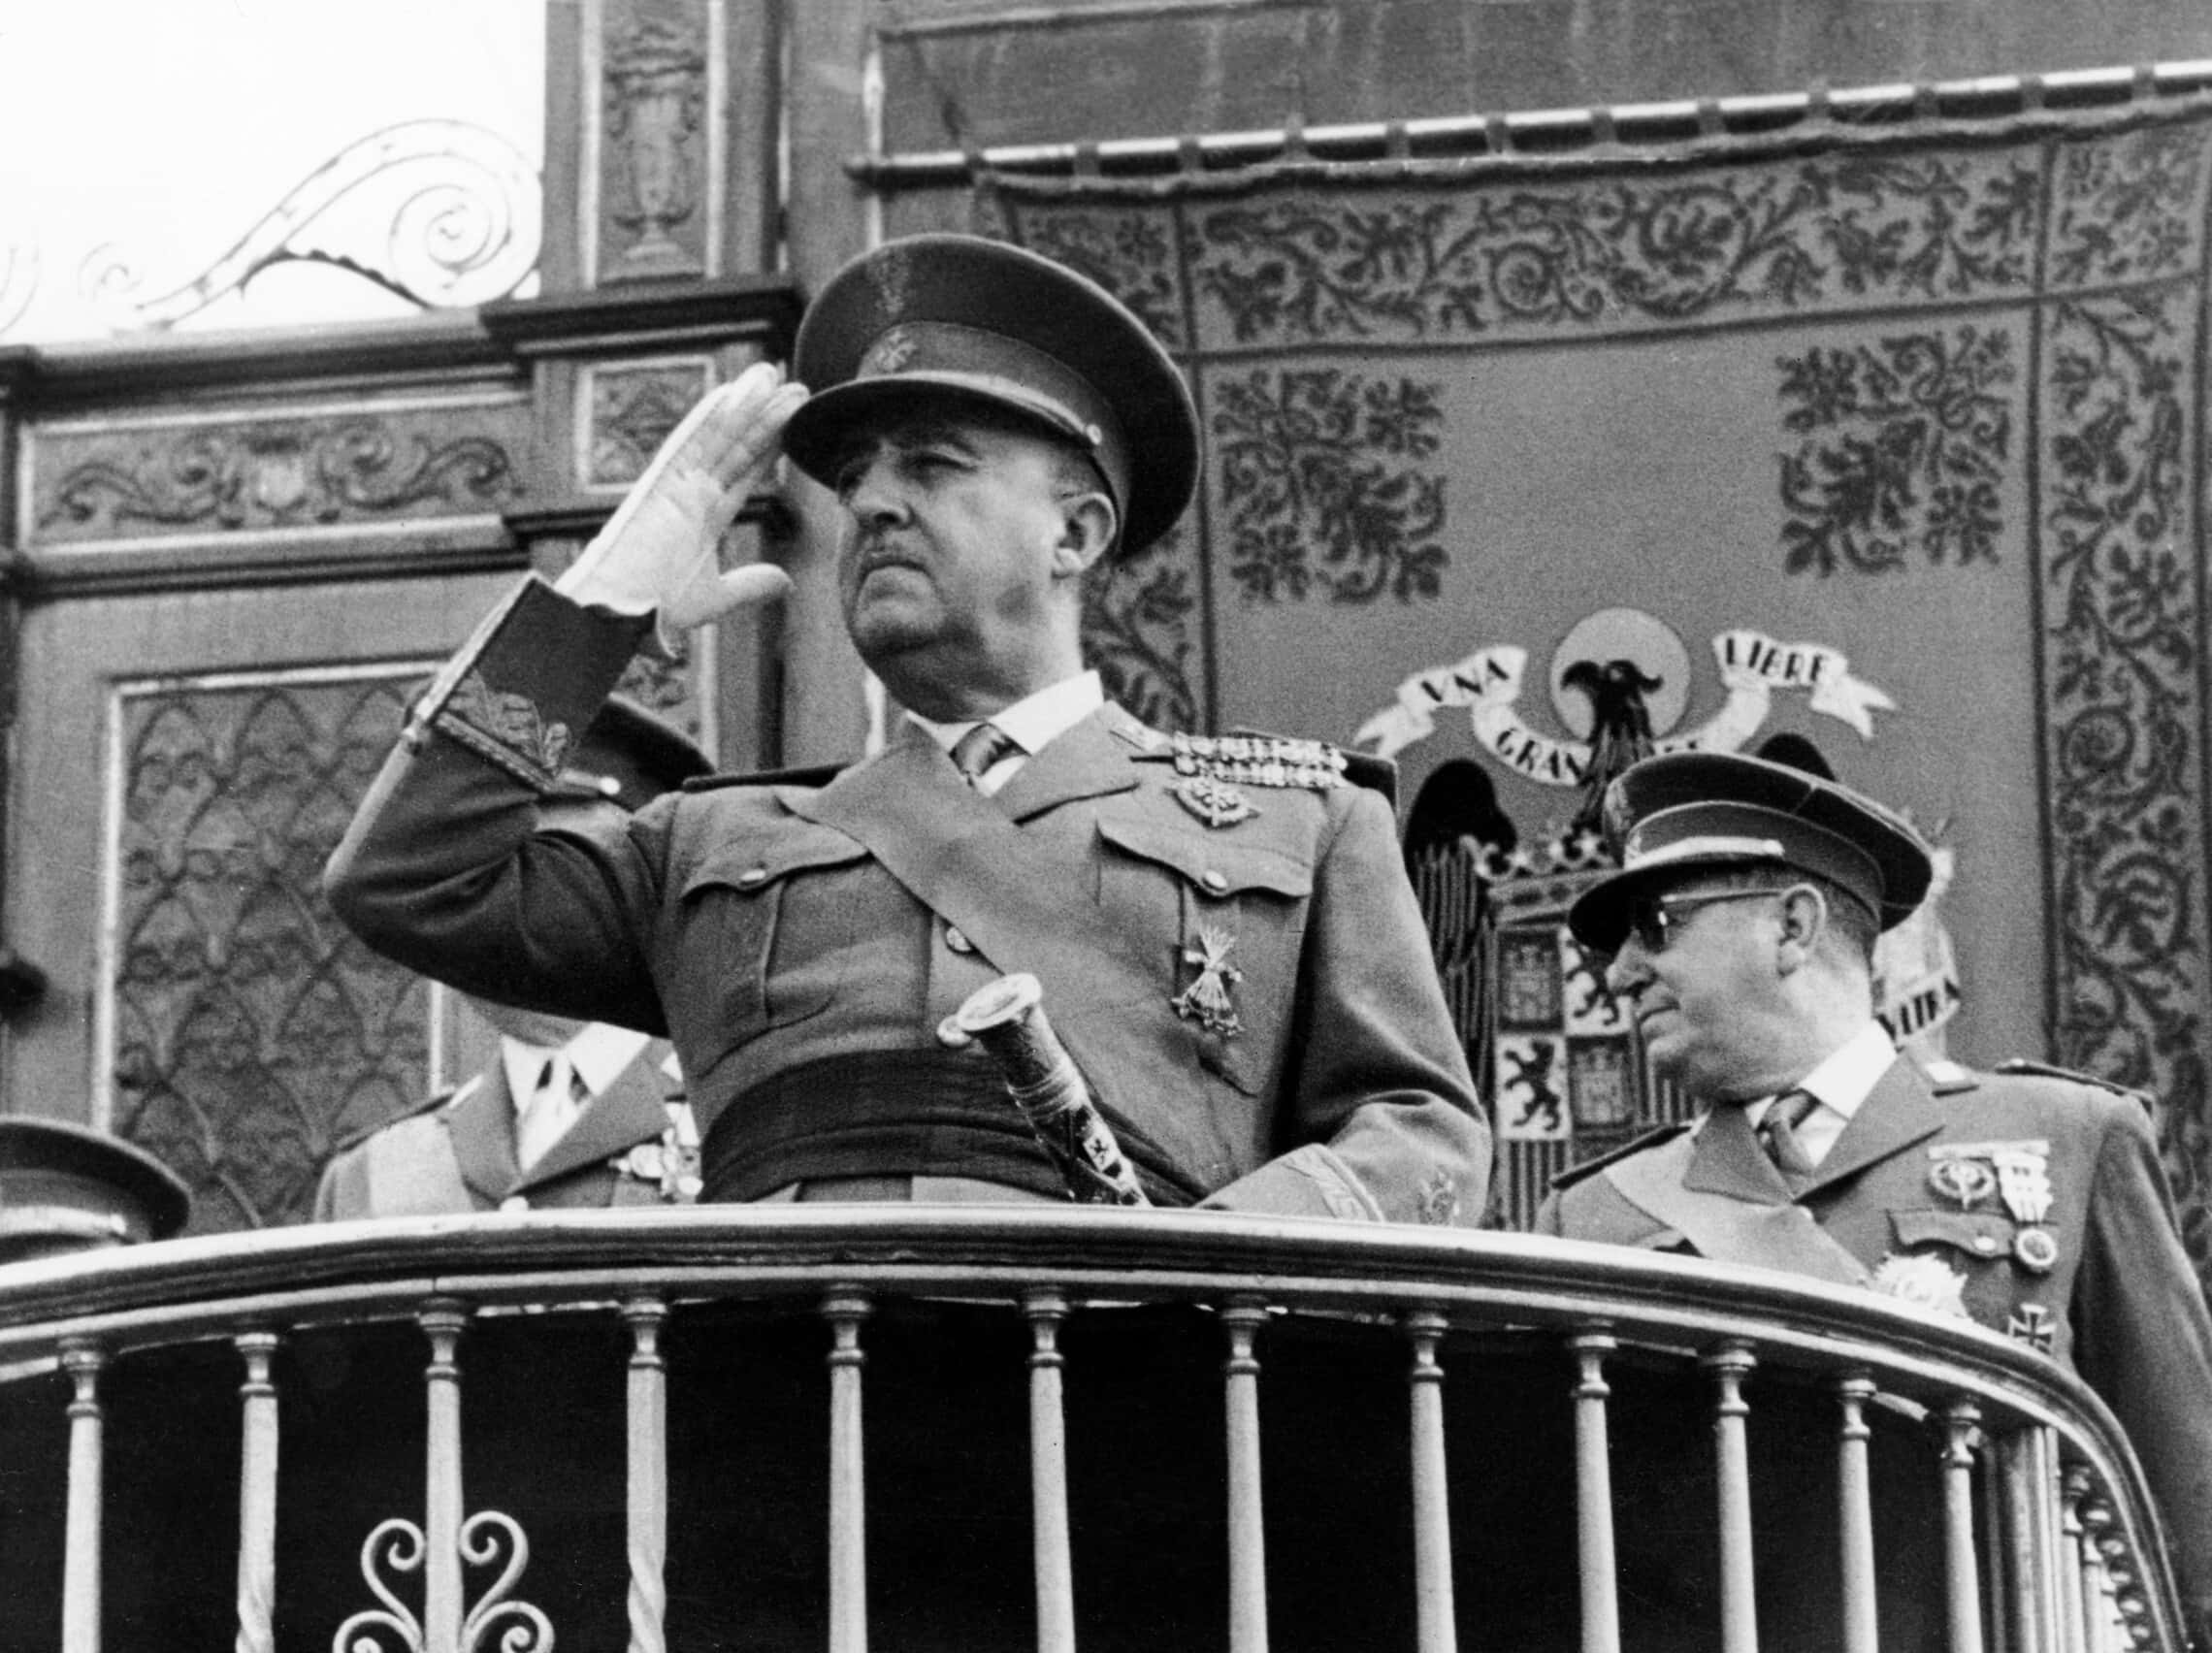 תמונה שצולמה בשנות ה-60 של הרודן הספרדי פרנסיסקו פרנקו (צילום: AFP)